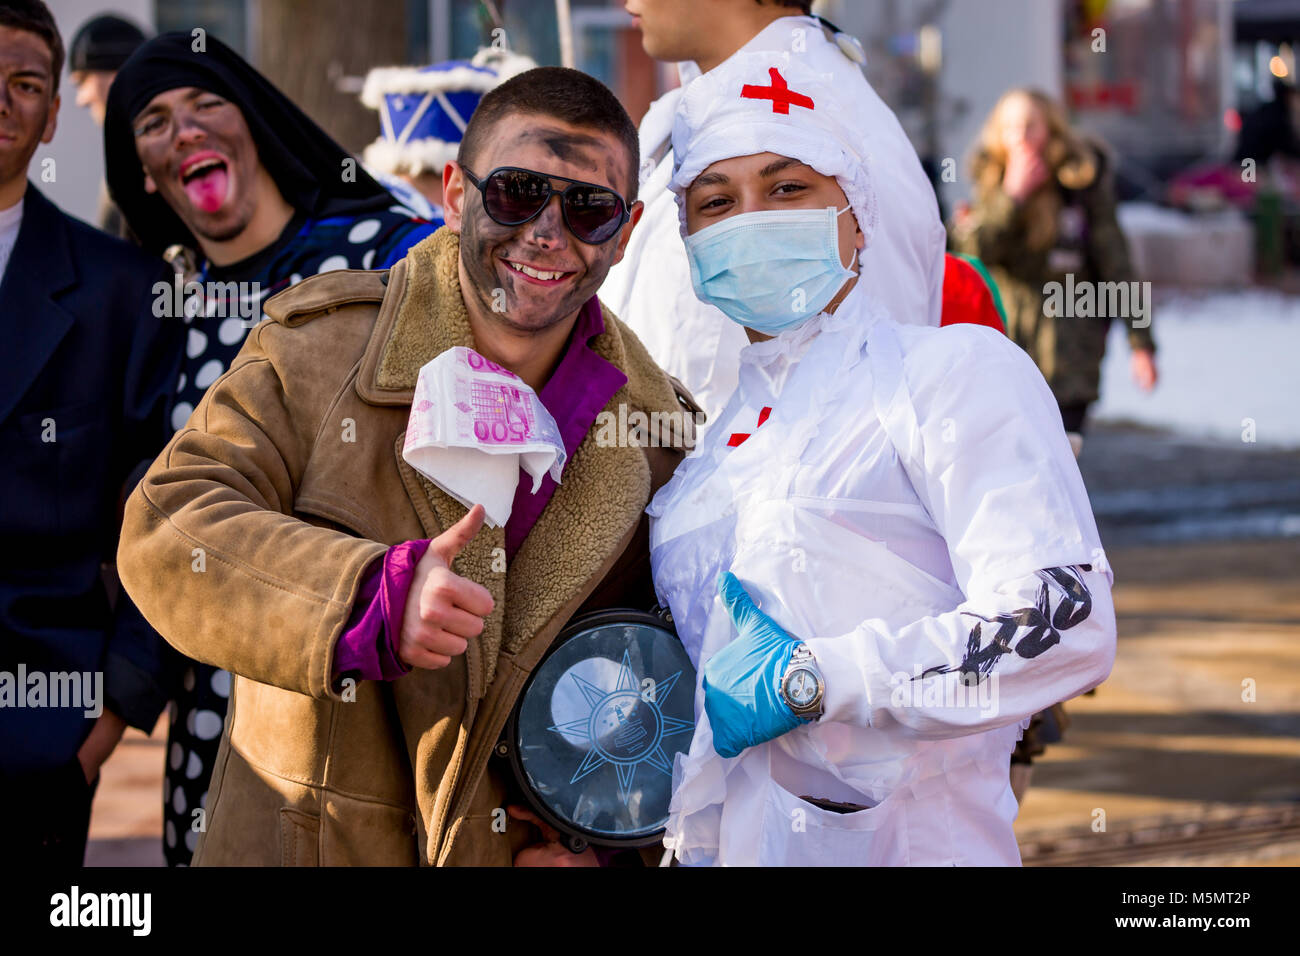 PERNIK, BULGARIE - 26 janvier 2018 : Deux artistes adolescents avec des costumes d'infirmière et patient smiling posent pour la caméra à l'édition 2004 du International Fest Banque D'Images